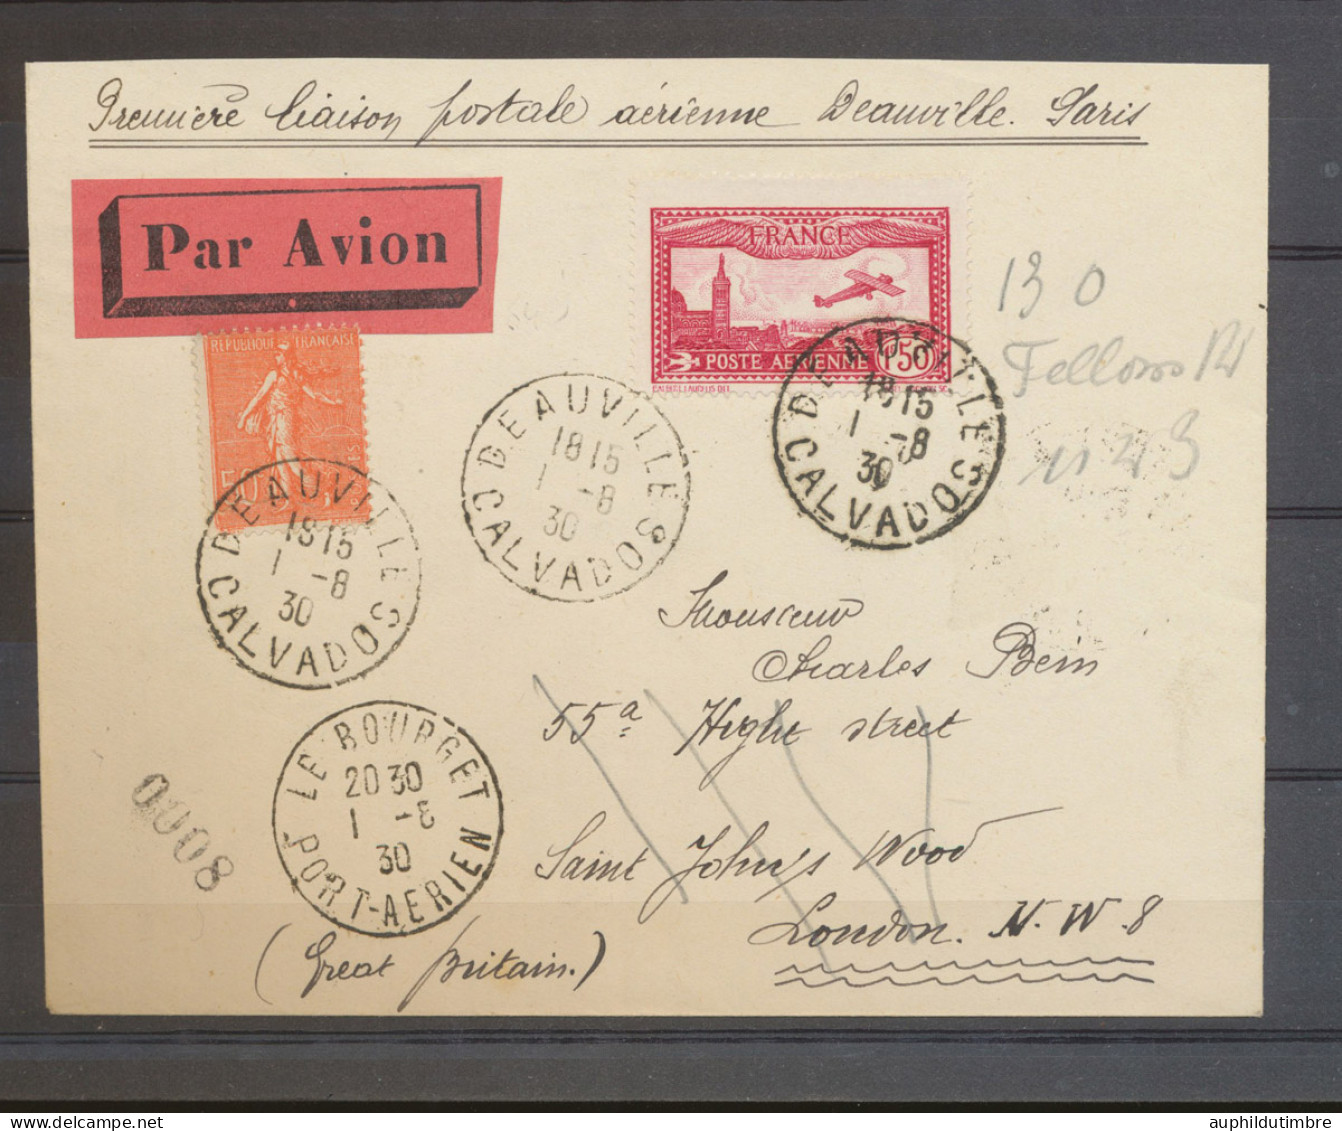 1930 Env. Première Liaison Postale AERIENNE DAUVILLE PARIS. RRR N3642 - 1921-1960: Période Moderne